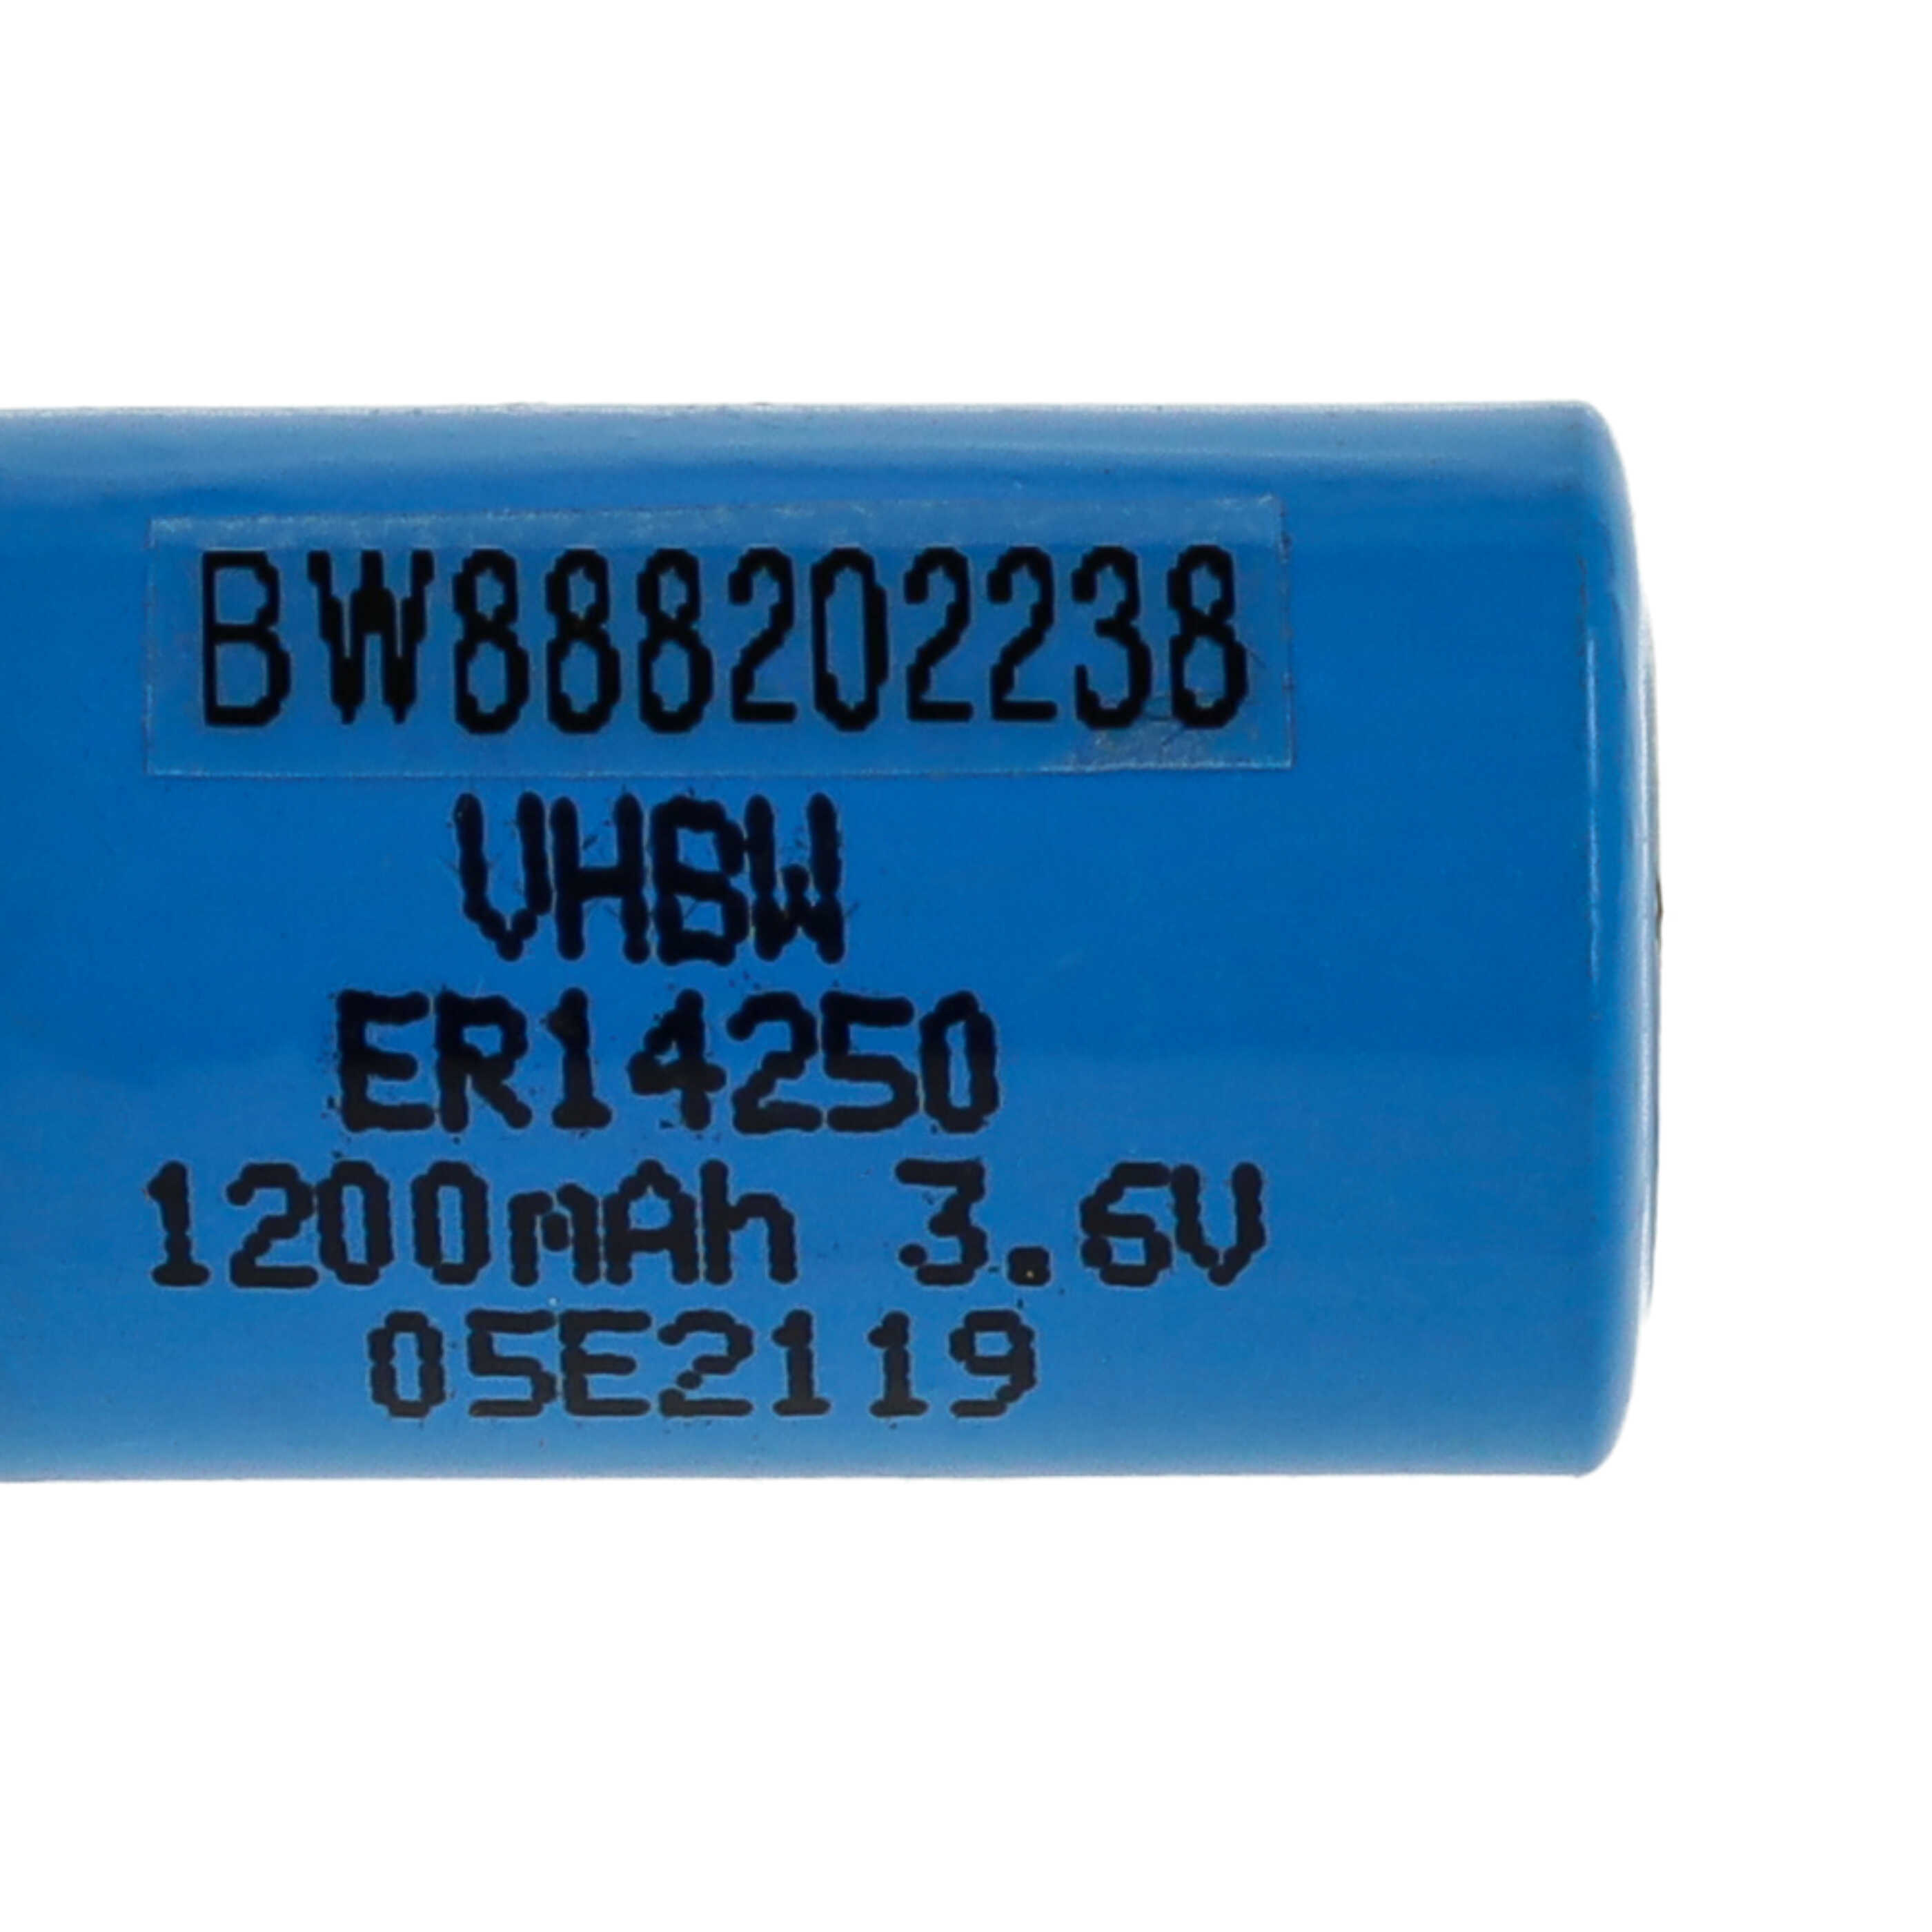 ER14250 Batteria speciale - 1200mAh 3,6V Li-SOCl2